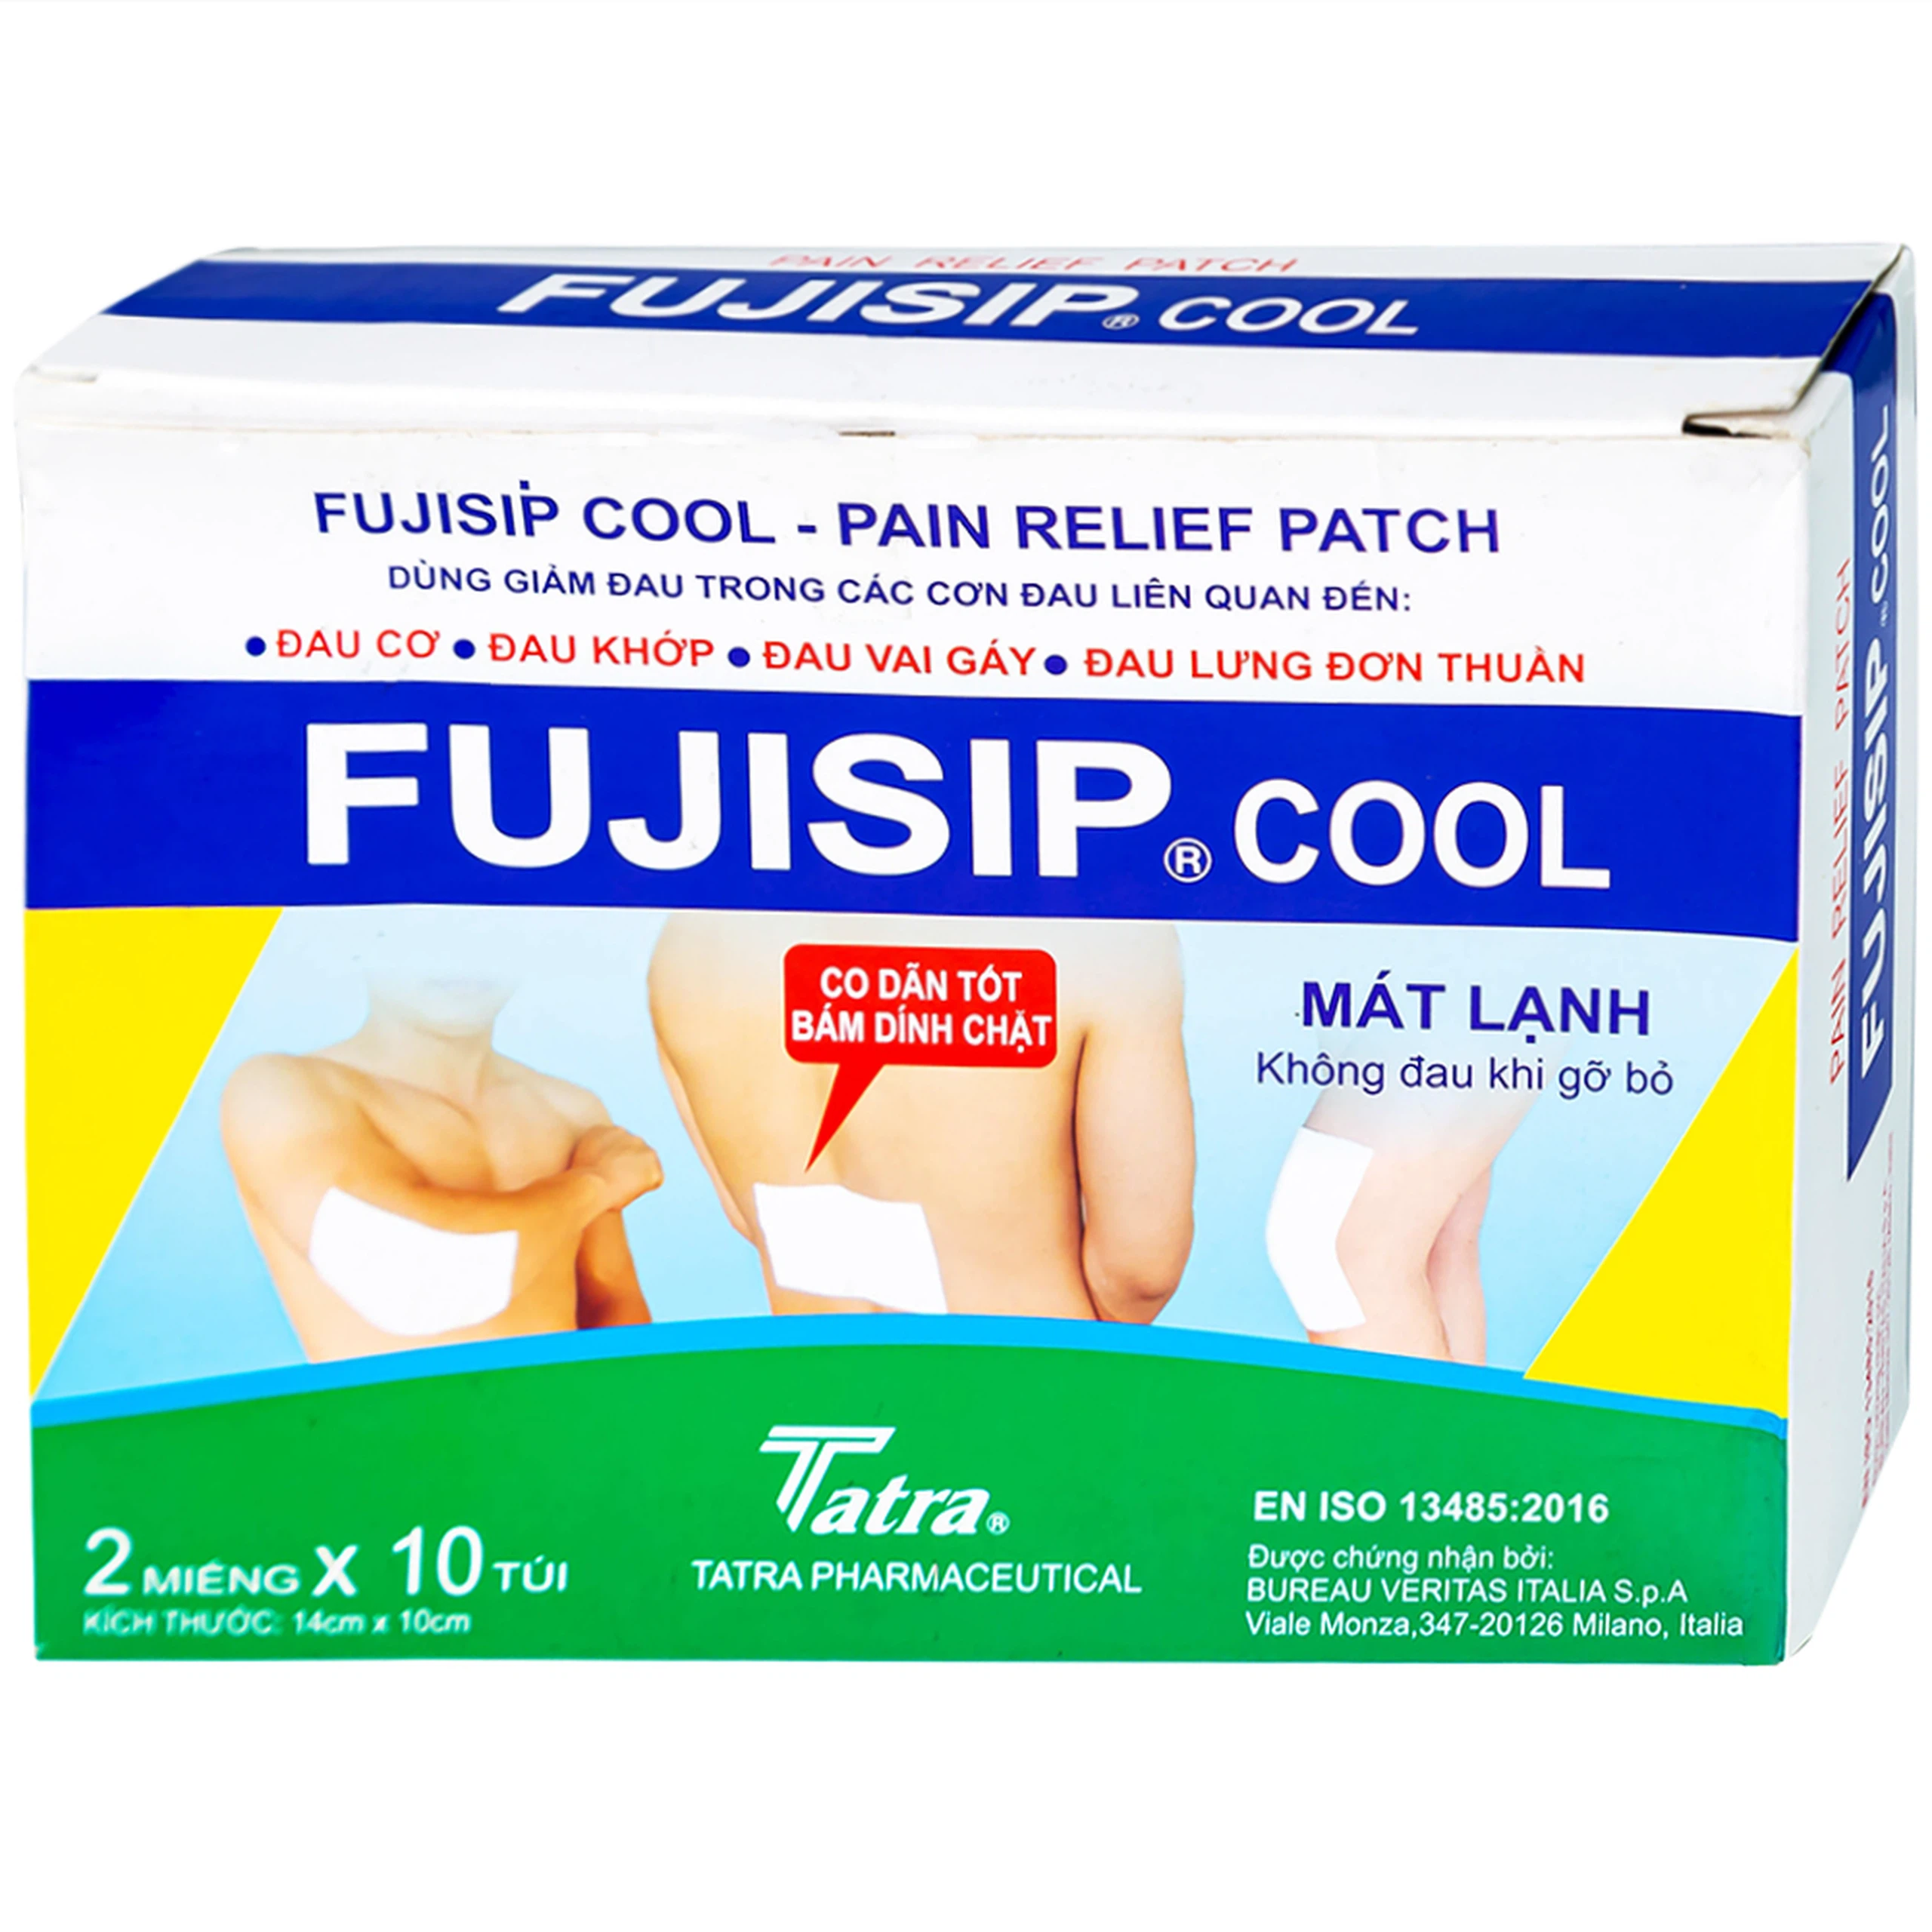 Cao dán Fujisip Cool Thiên Ân giảm đau cơ, đau khớp, đau vai gáy, đau lưng (10 túi)